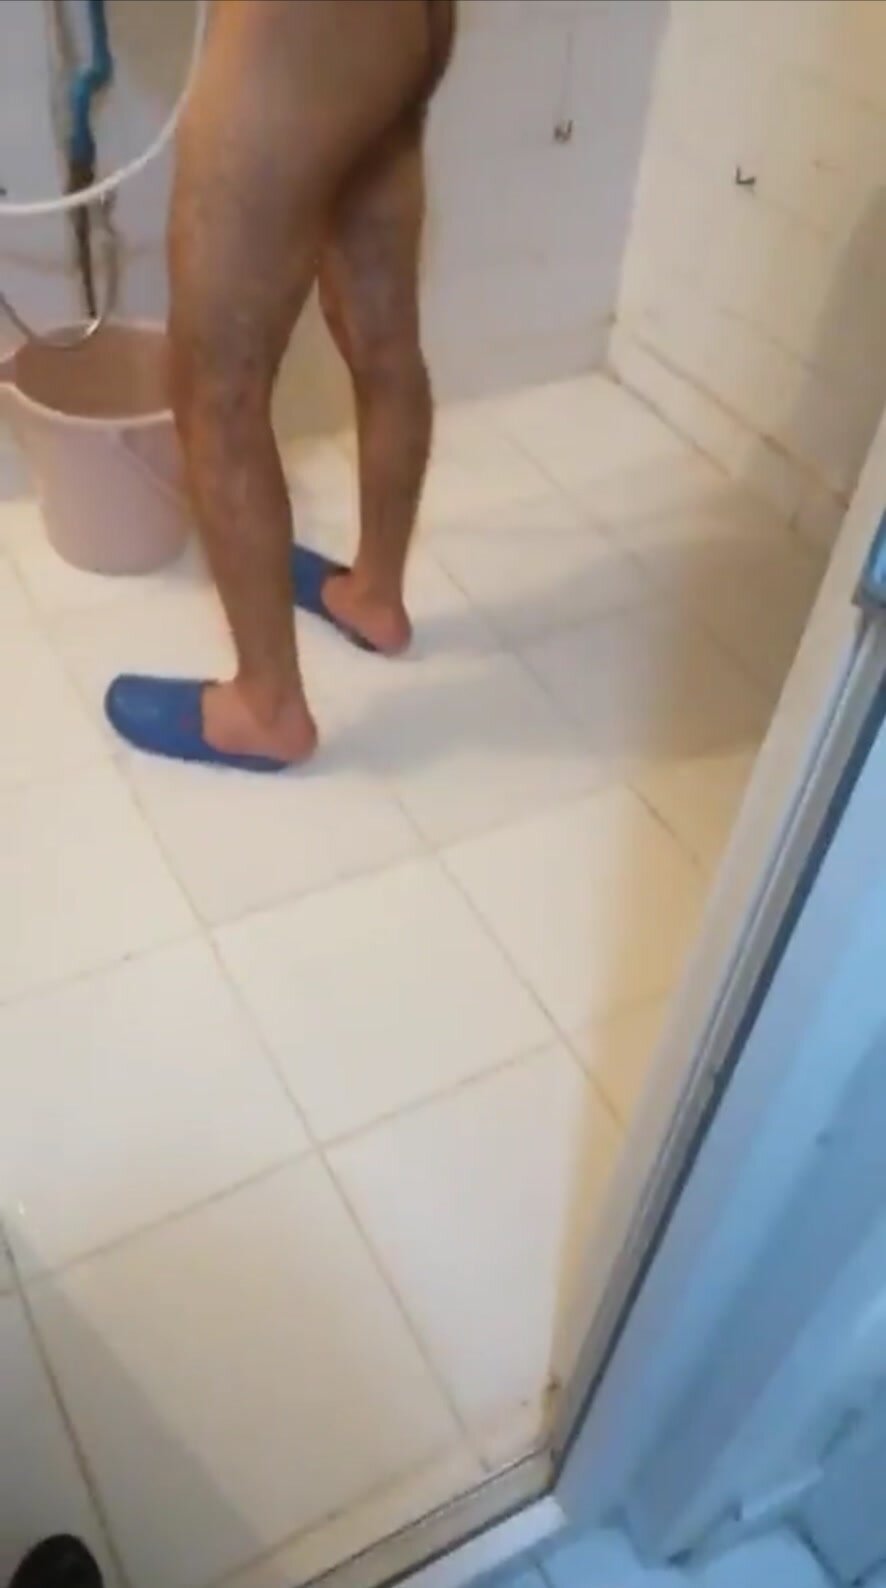 Turkish guy un shower